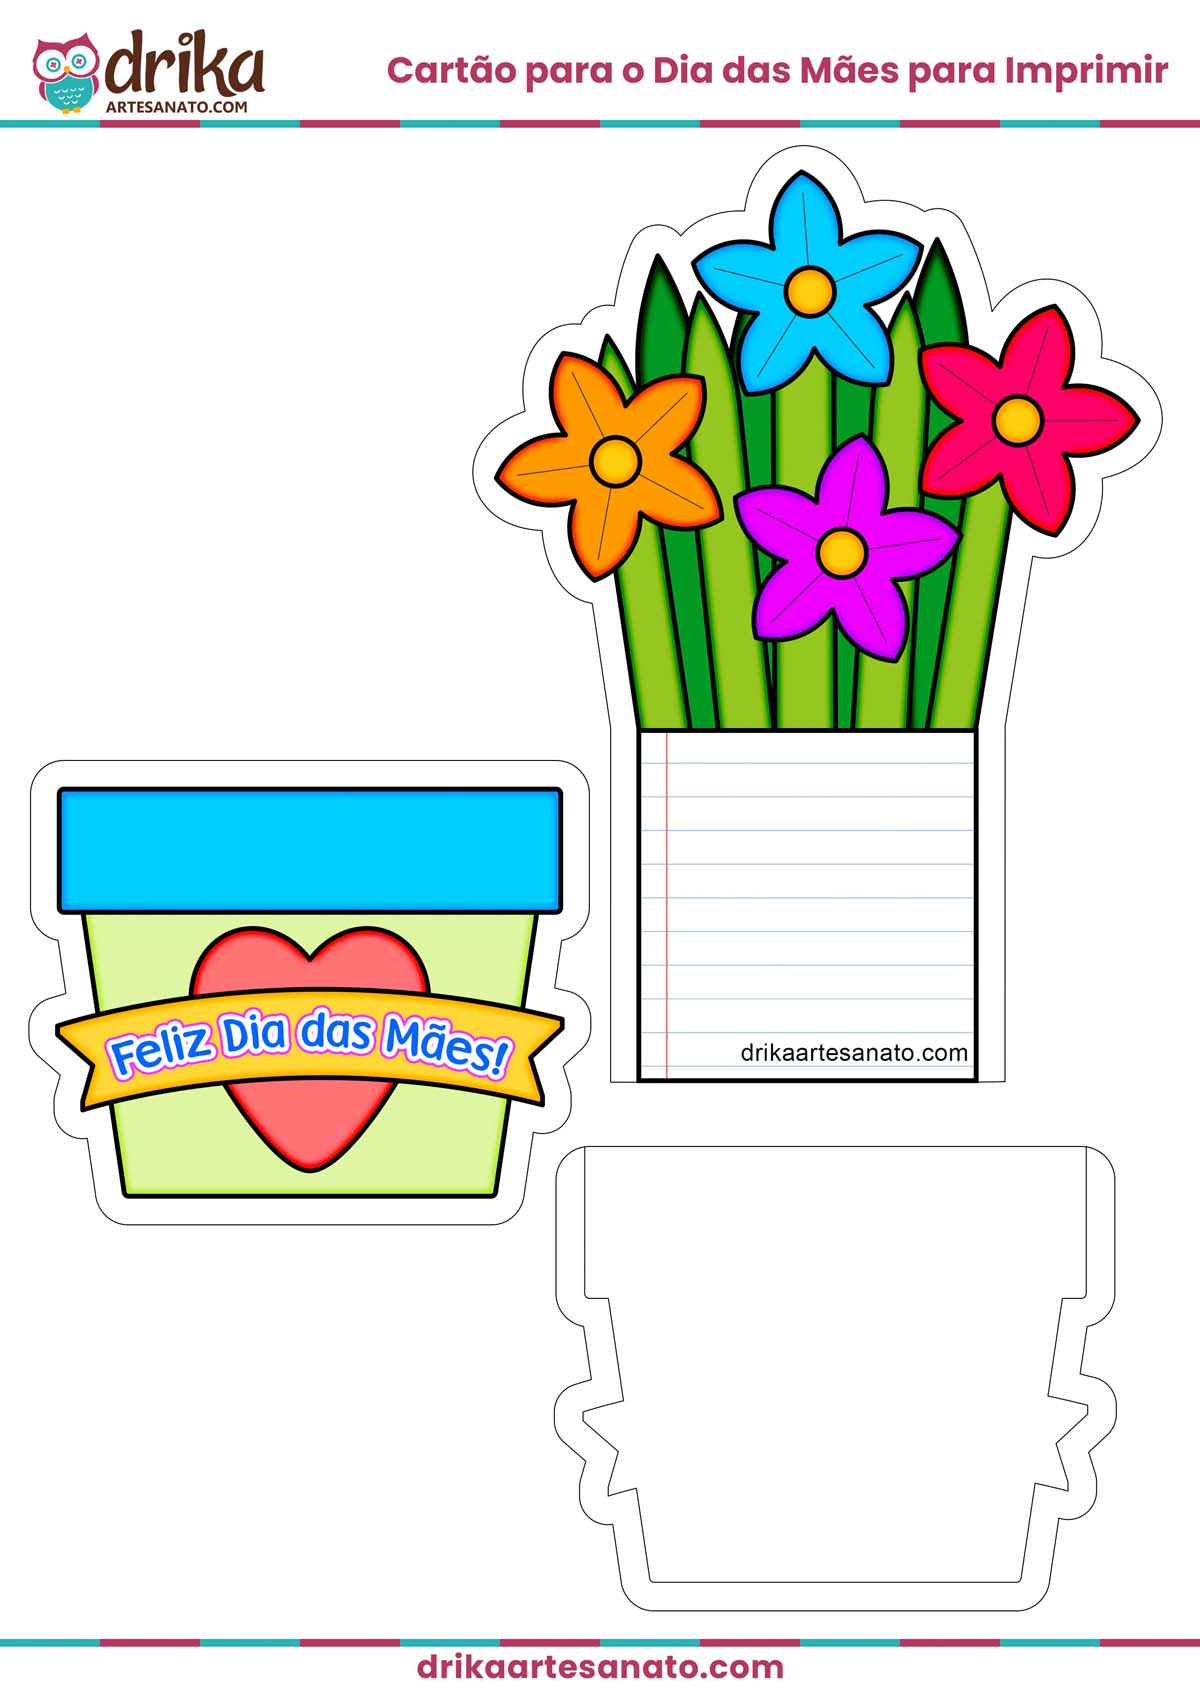 Molde de Cartão para o Dia das Mães com Vaso de Flores para Imprimir